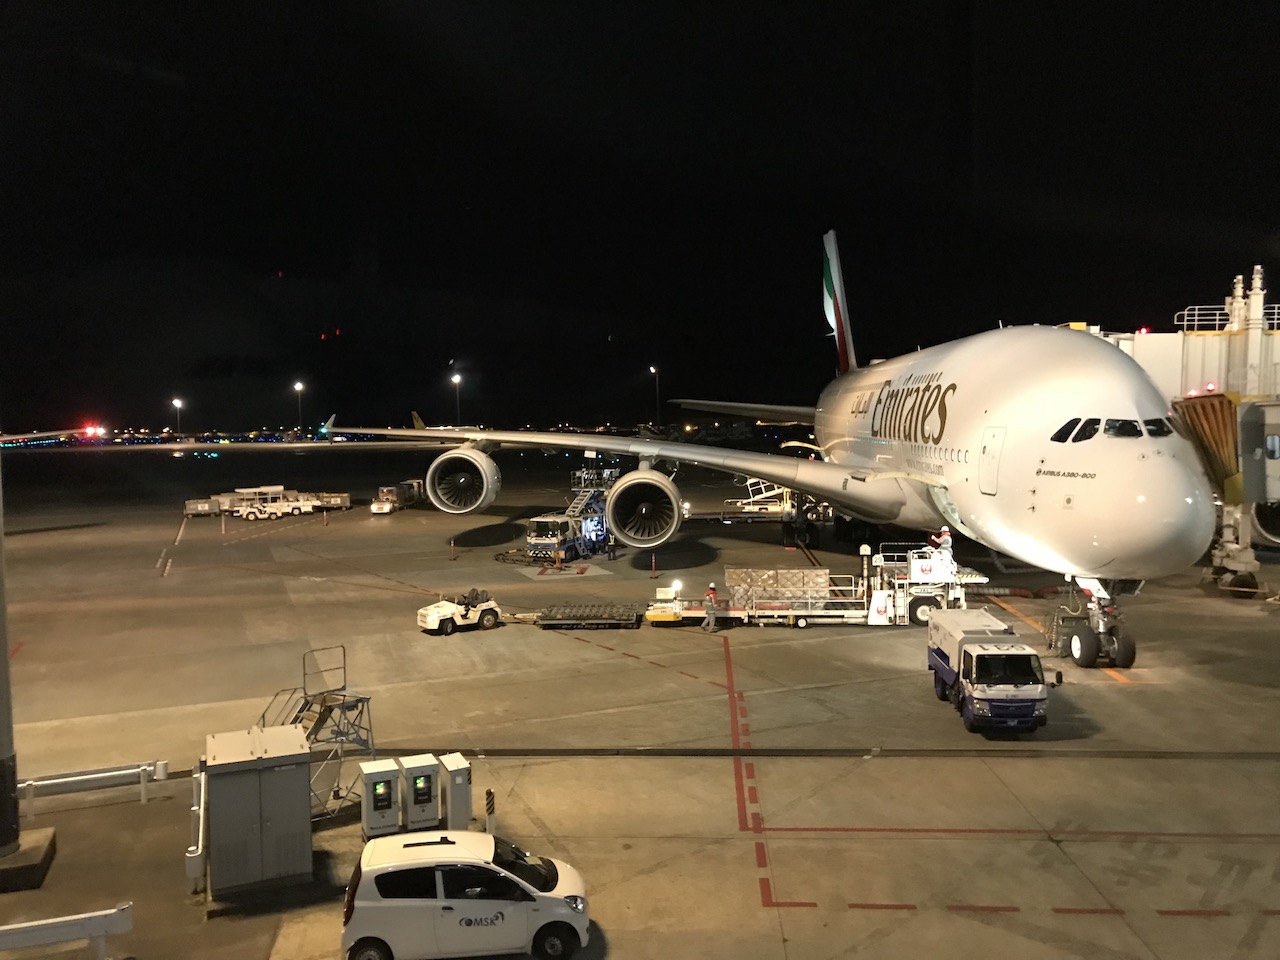 【A380大解剖】エミレーツ航空のエコノミーでドバイまで行ってみた。